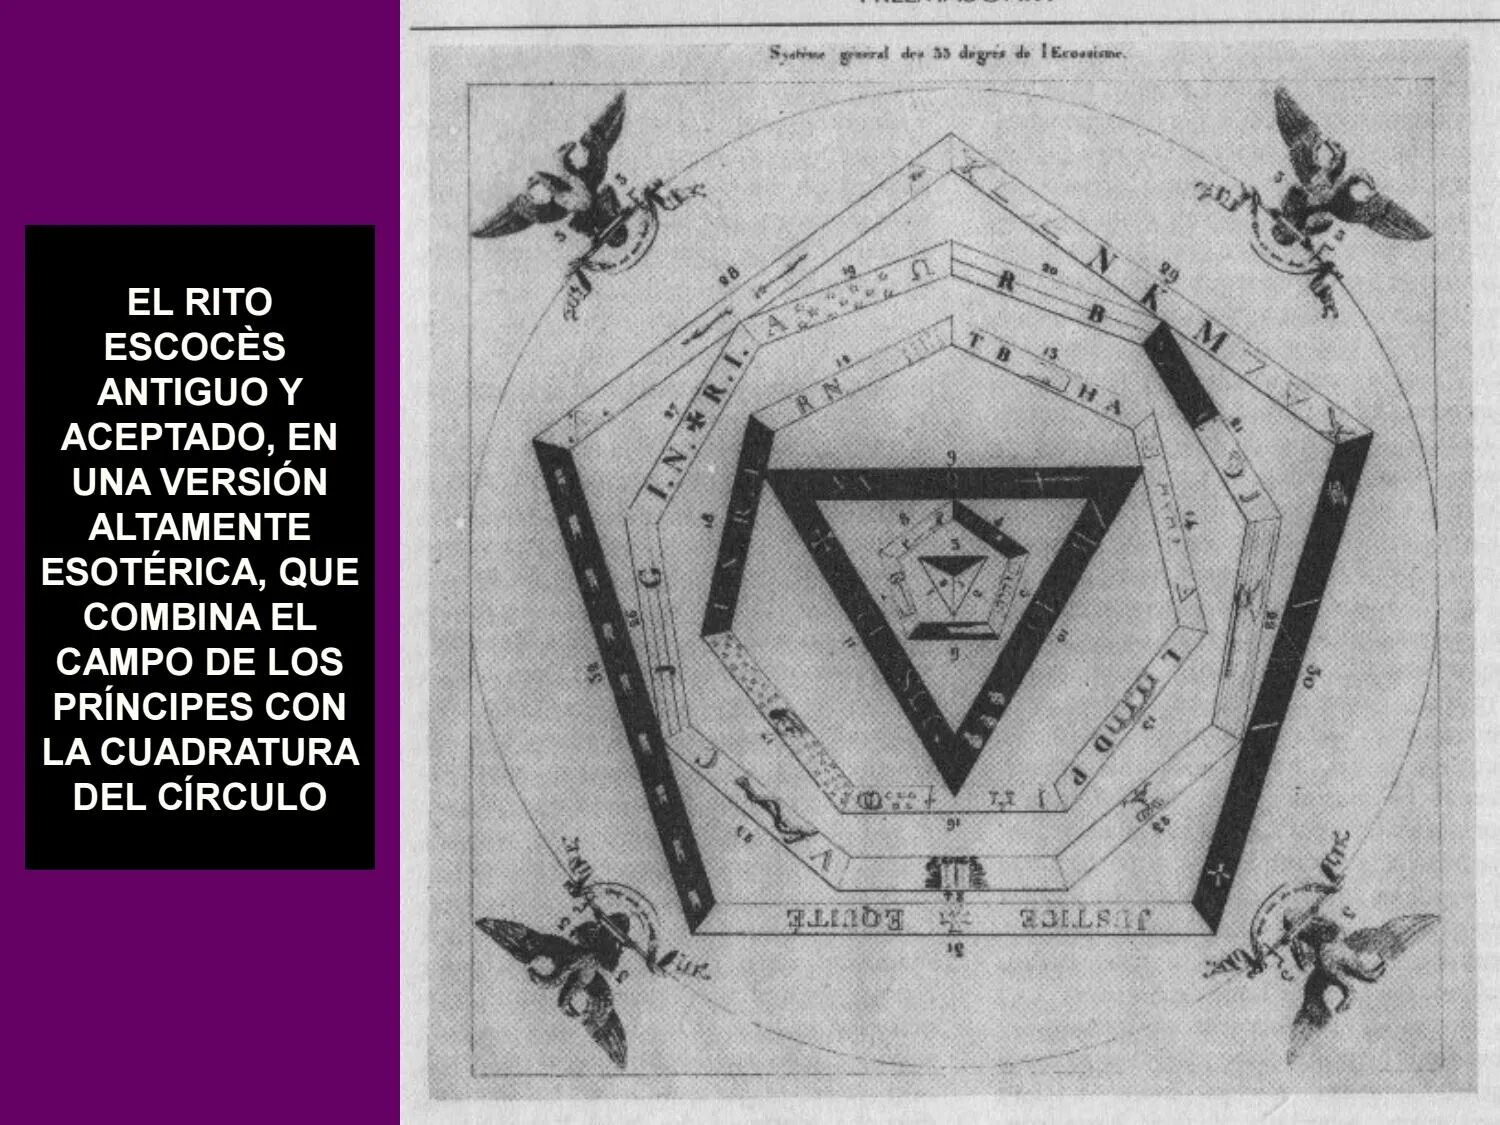 Градусы масонов. 33 Ступени масонства. Пирамида масонства. Знаки масонства тамплиеров.